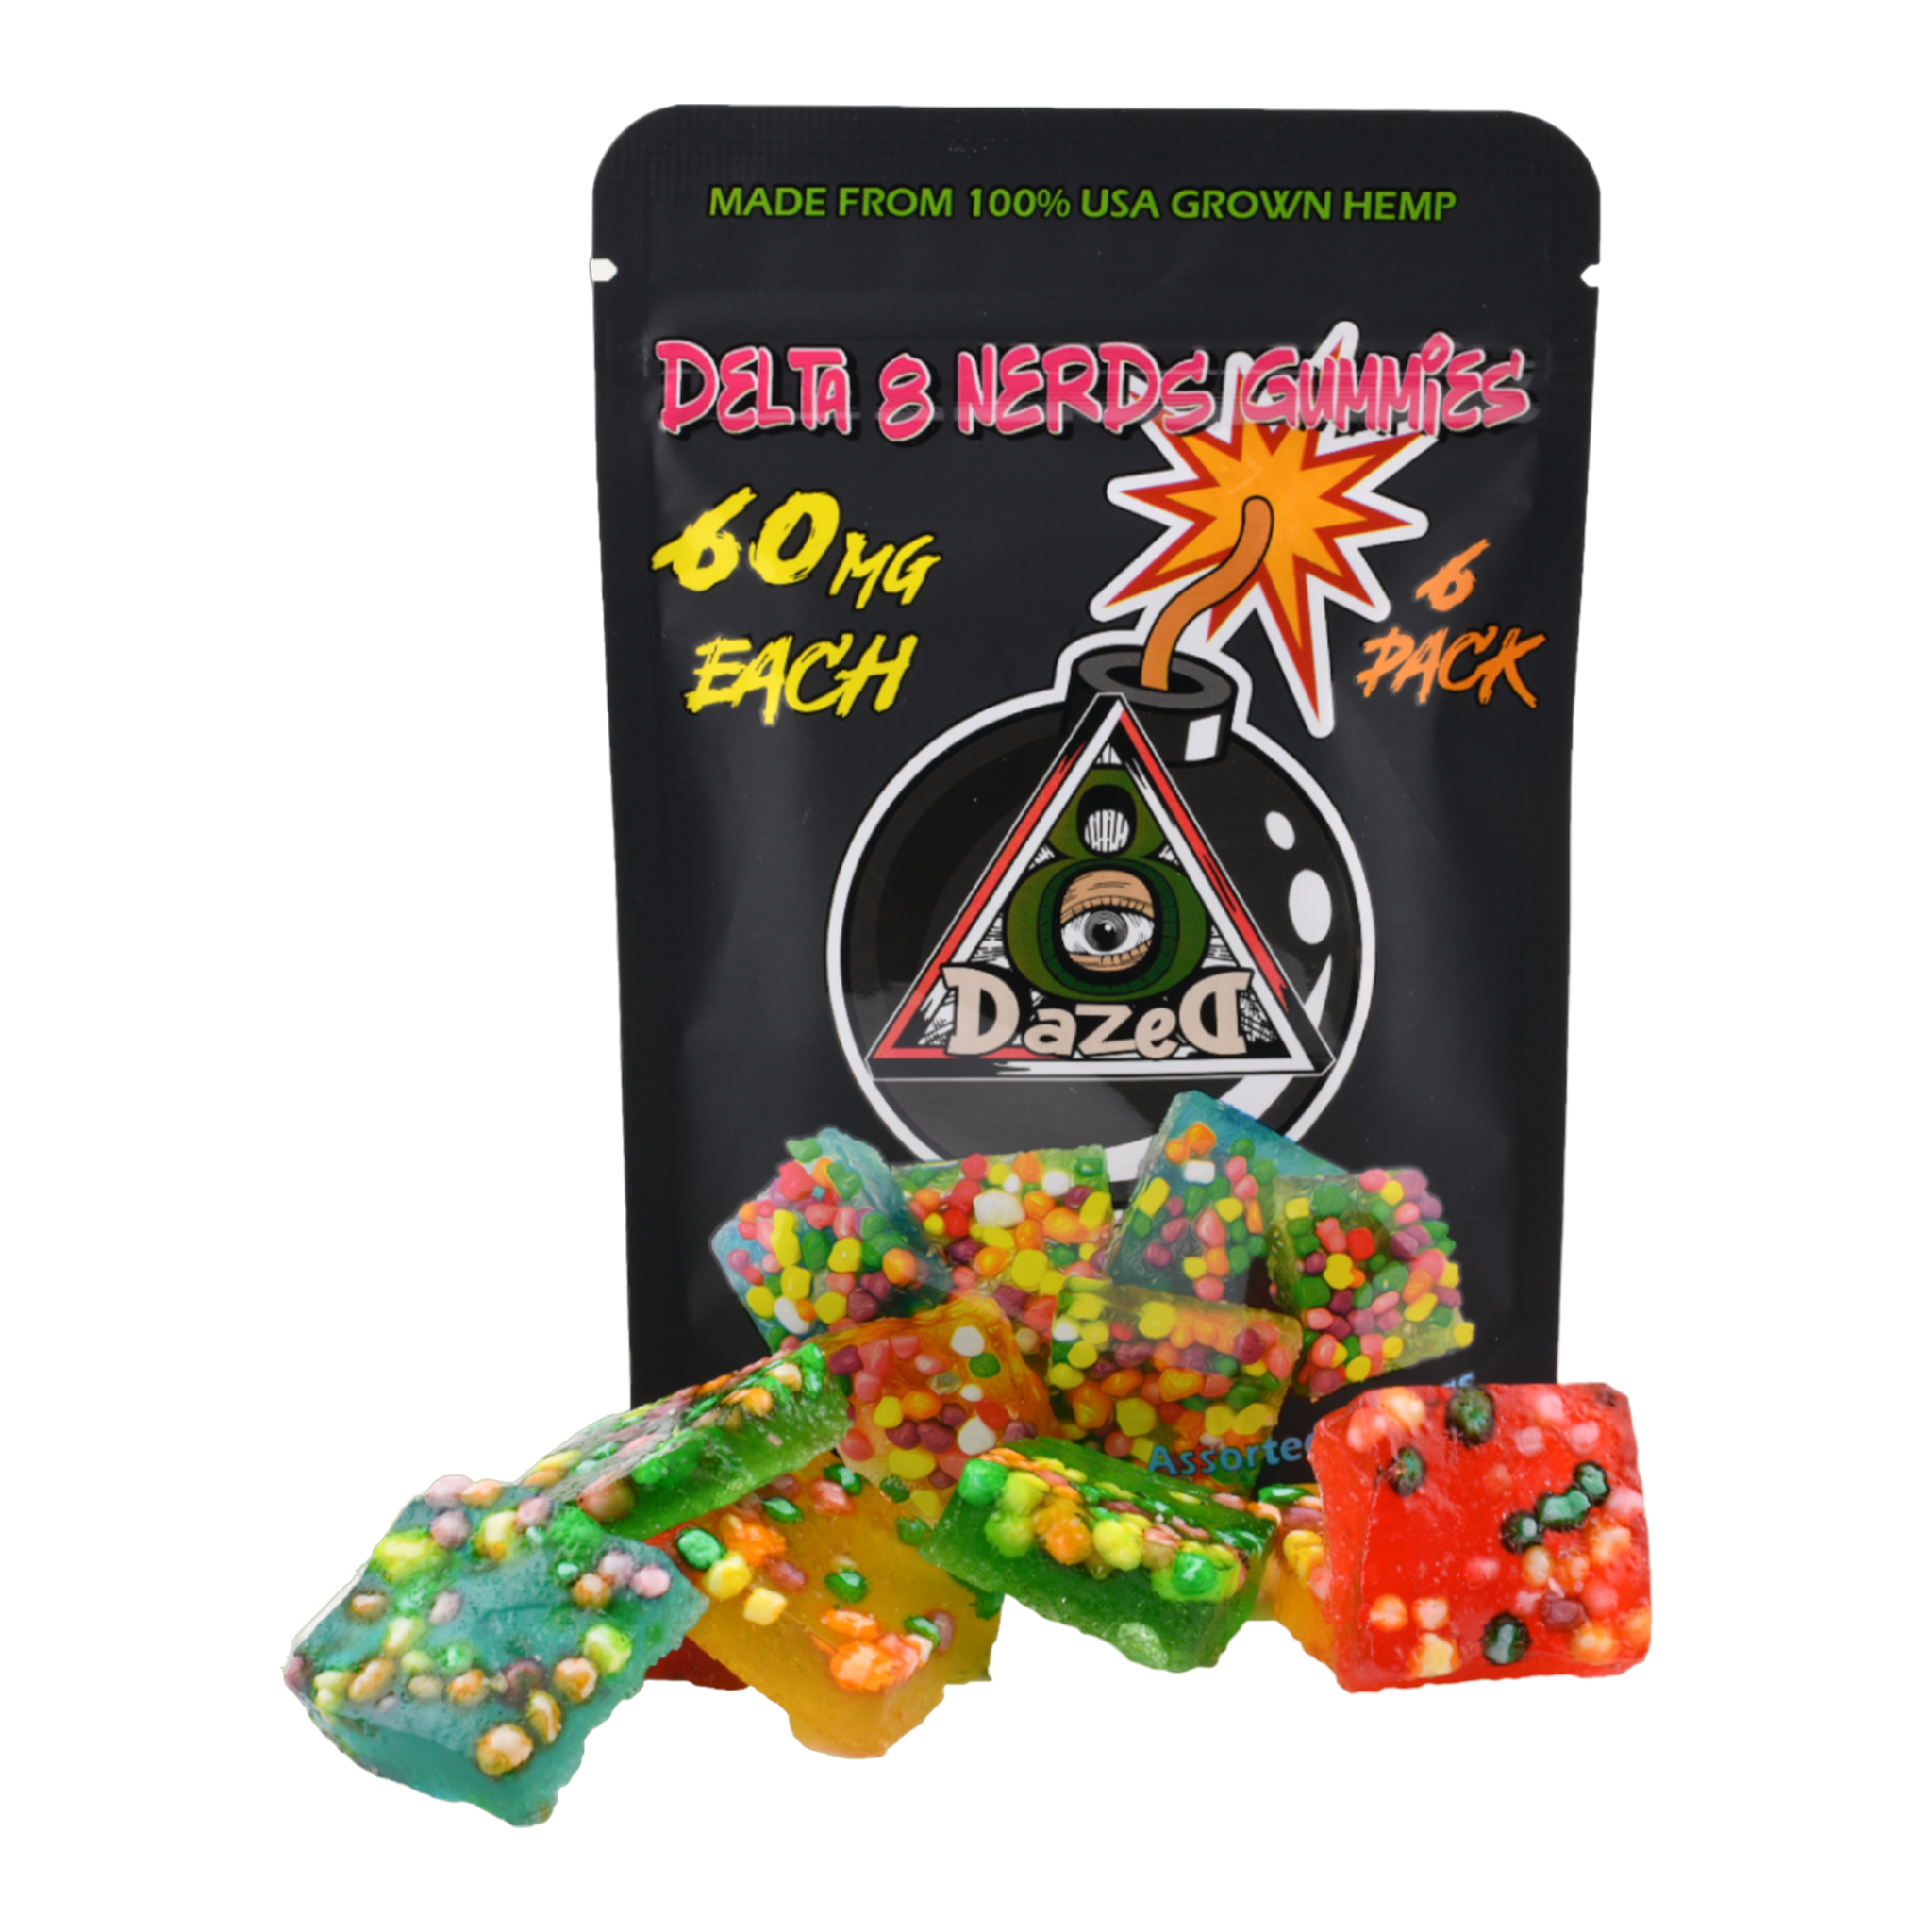 Nurdz Delta 8 Gummies - 6pc [60MG]